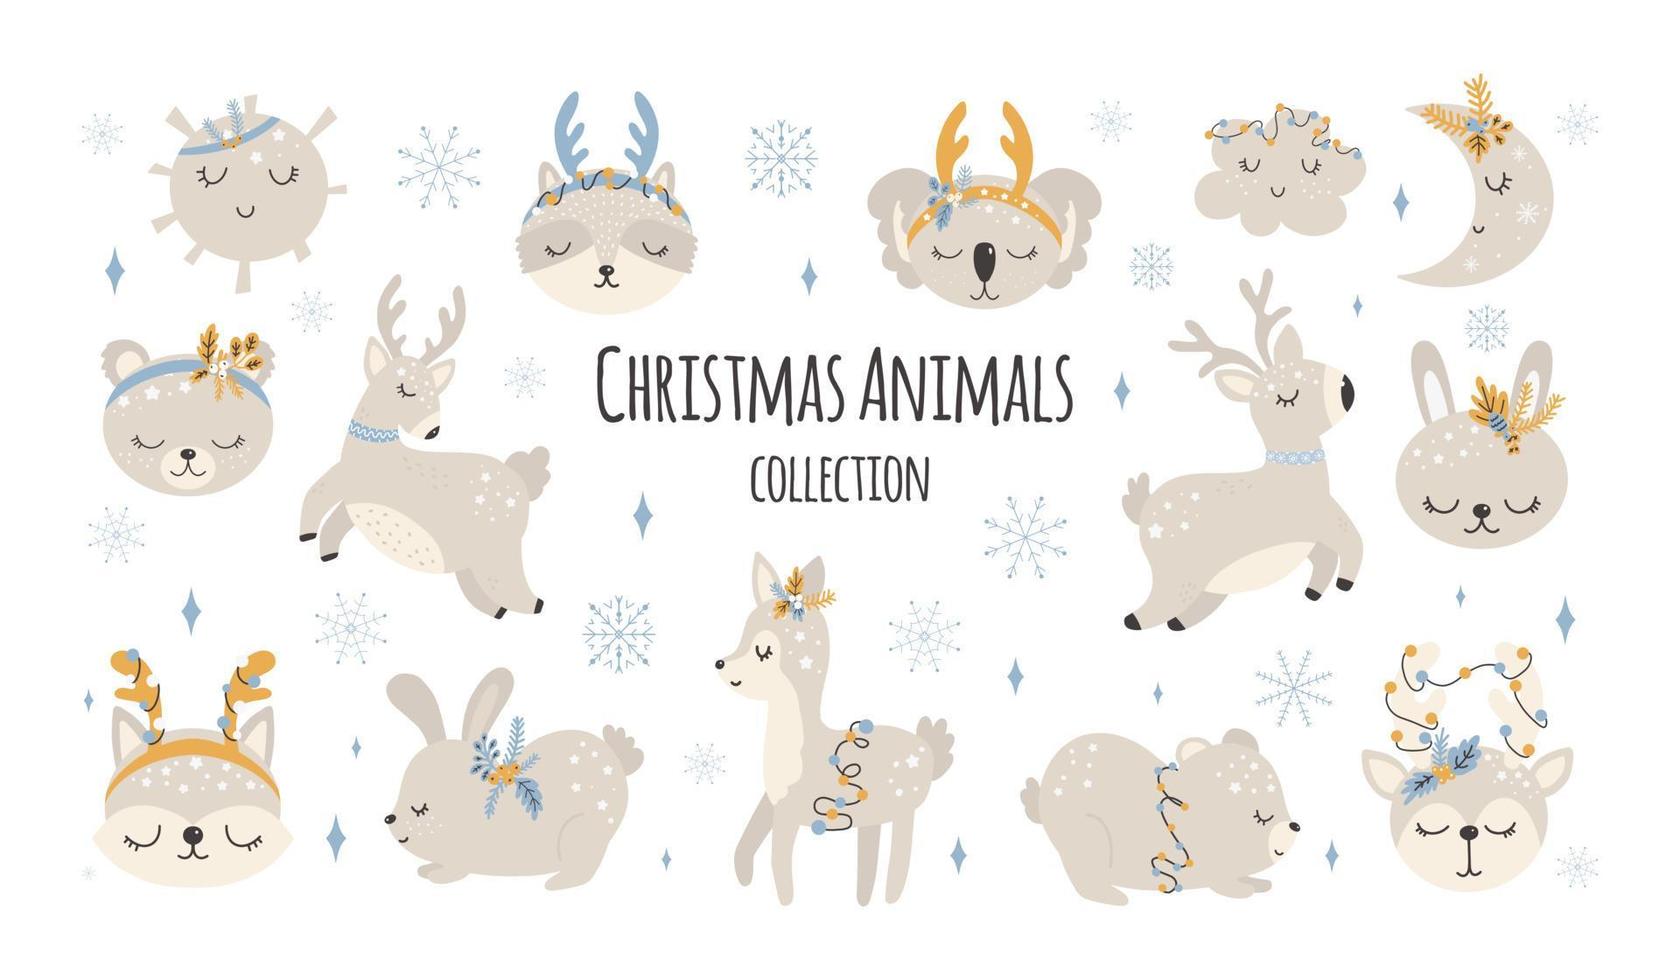 colección de animales lindos de navidad, ilustraciones de feliz navidad de oso, conejito con accesorios de invierno. estilo escandinavo sobre un fondo blanco. vector